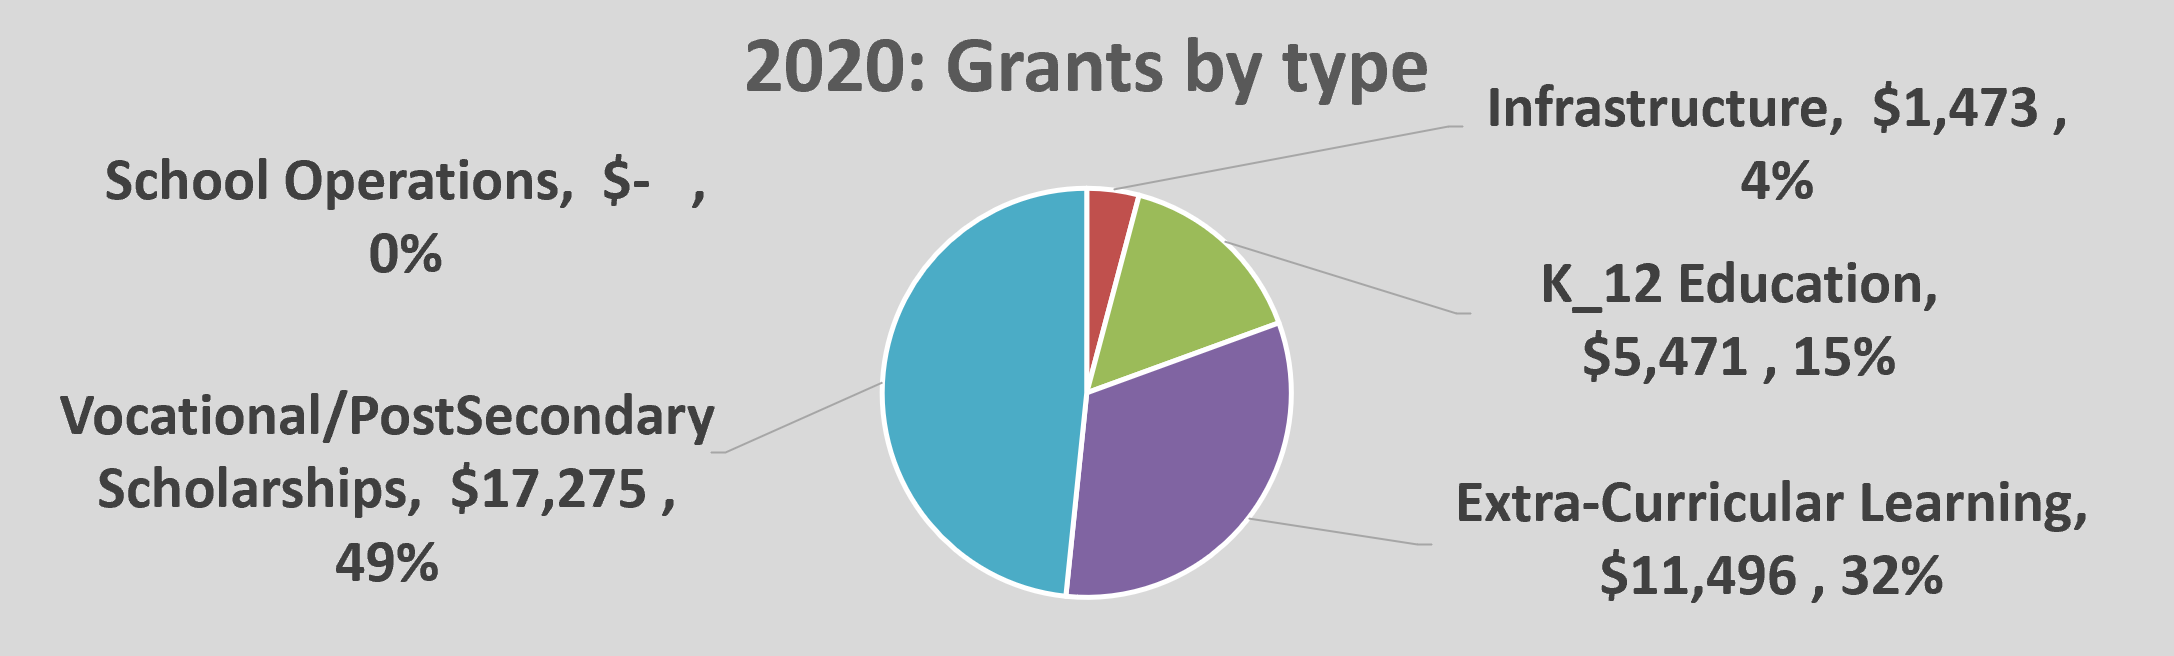 OPEN grants 2020